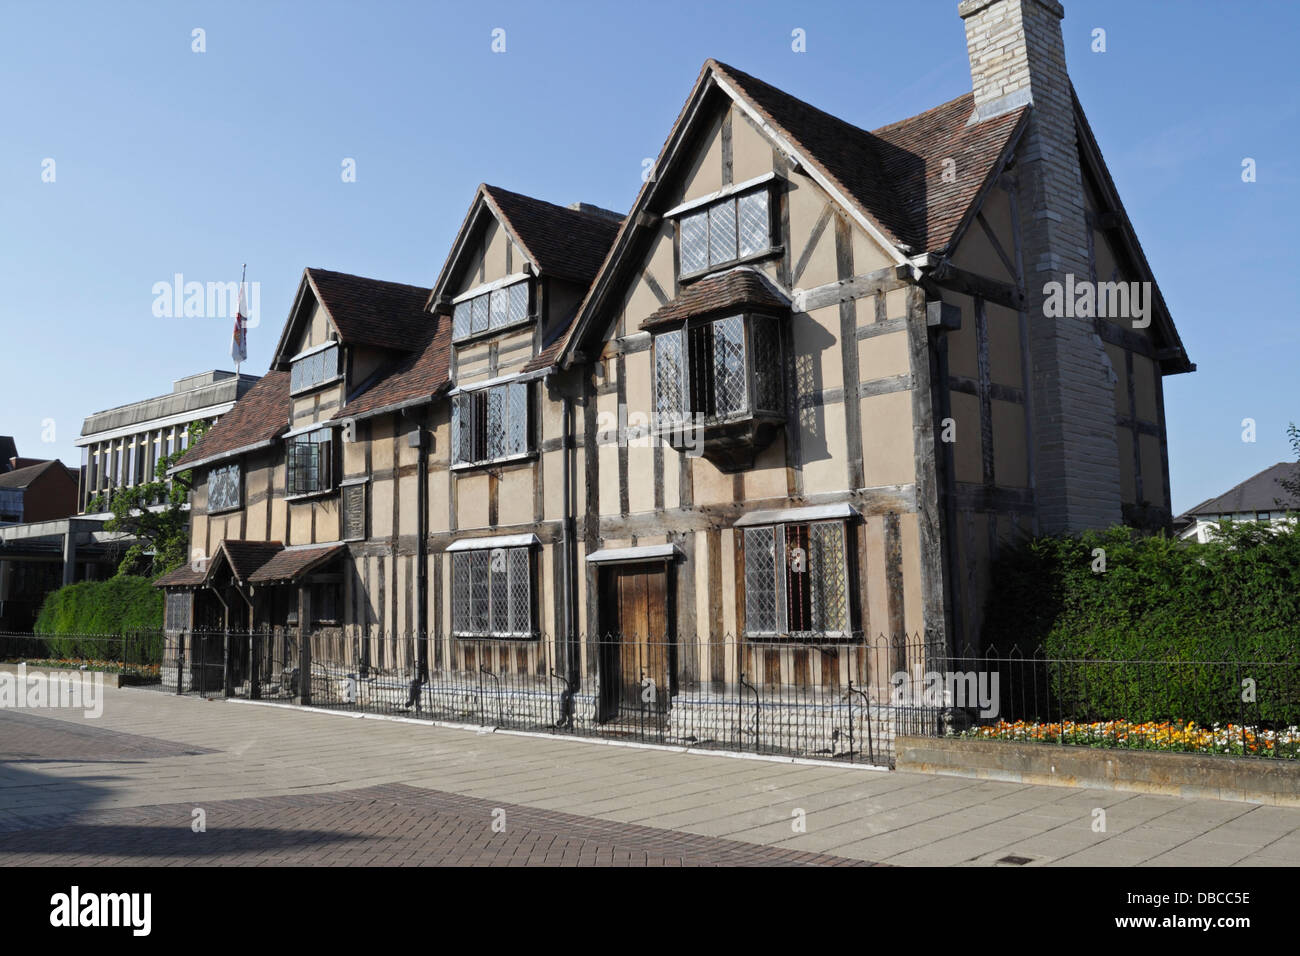 Luogo di nascita di William Shakespeare a Henley Street Stratford upon Avon Inghilterra, edificio classificato di livello 1 attrazione turistica inglese Foto Stock